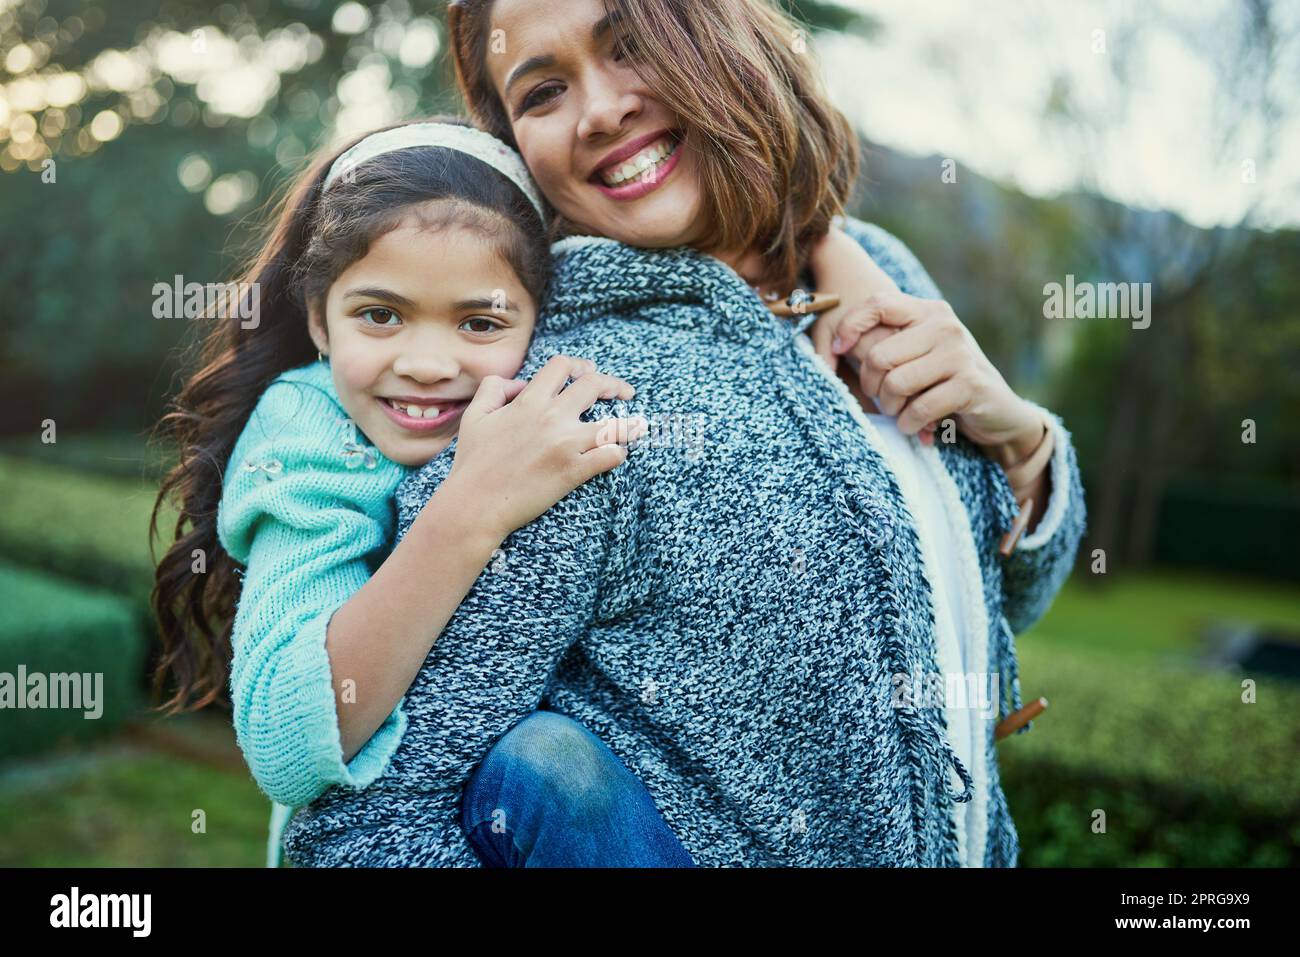 Meine Tochter, die Freude meines Lebens. Porträt einer glücklichen Mutter und Tochter, die eine Huckepack-Fahrt im Freien genießen. Stockfoto